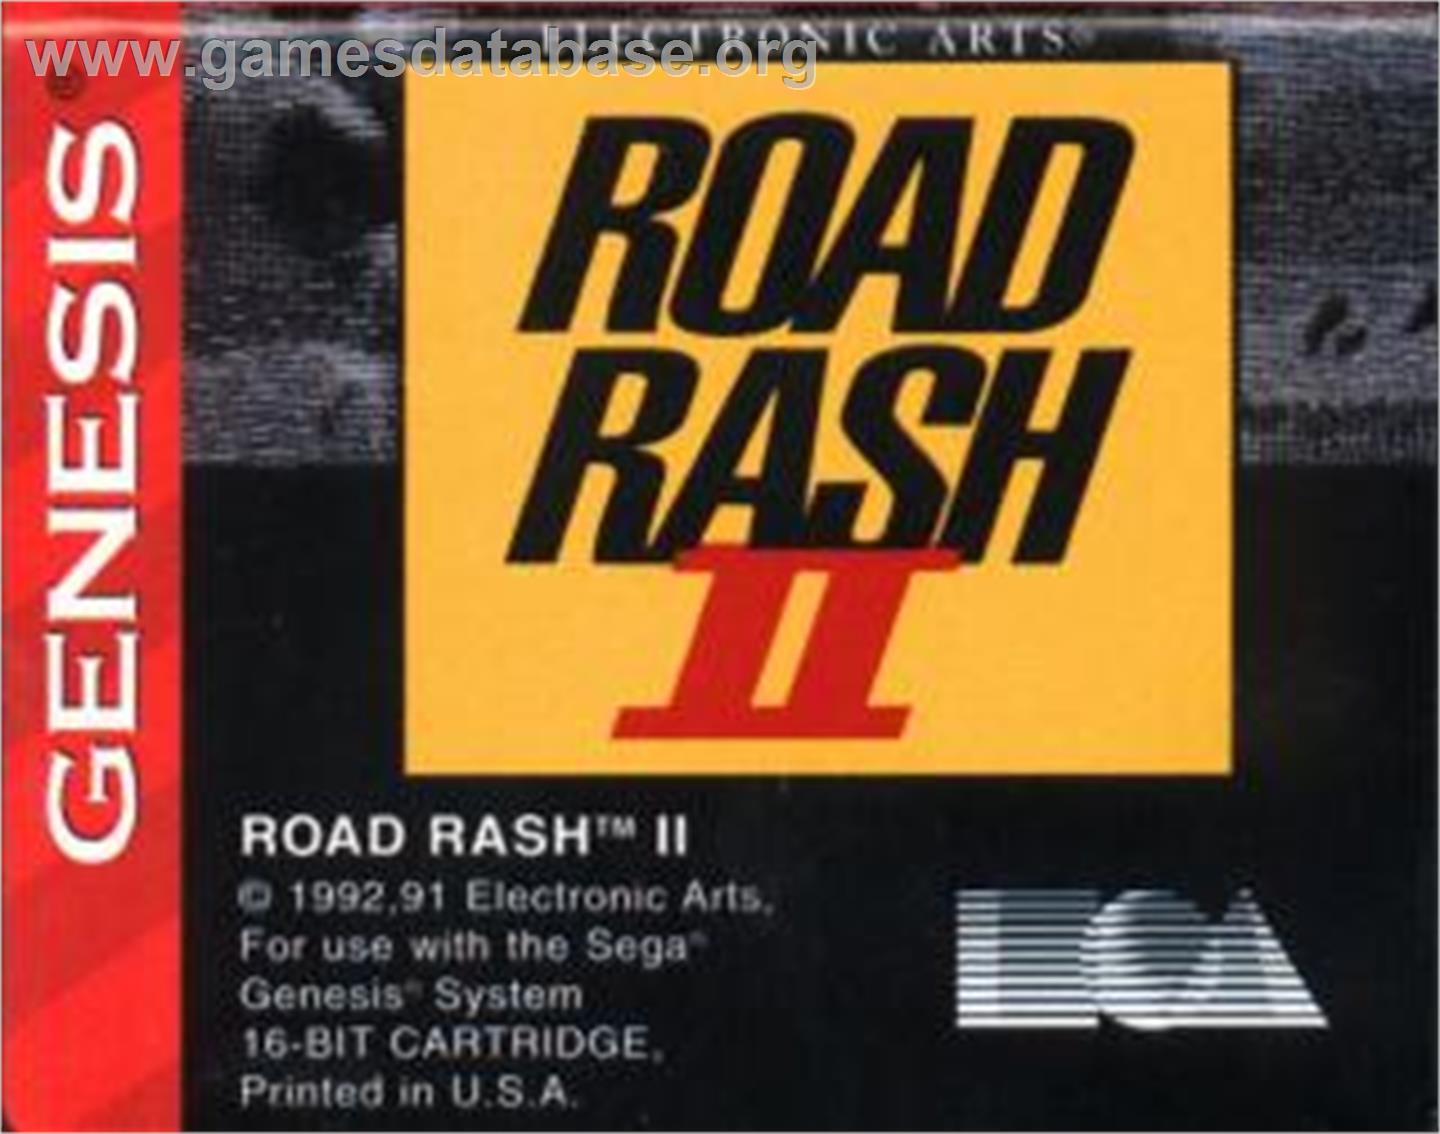 Road Rash 2 - Sega Nomad - Artwork - Cartridge